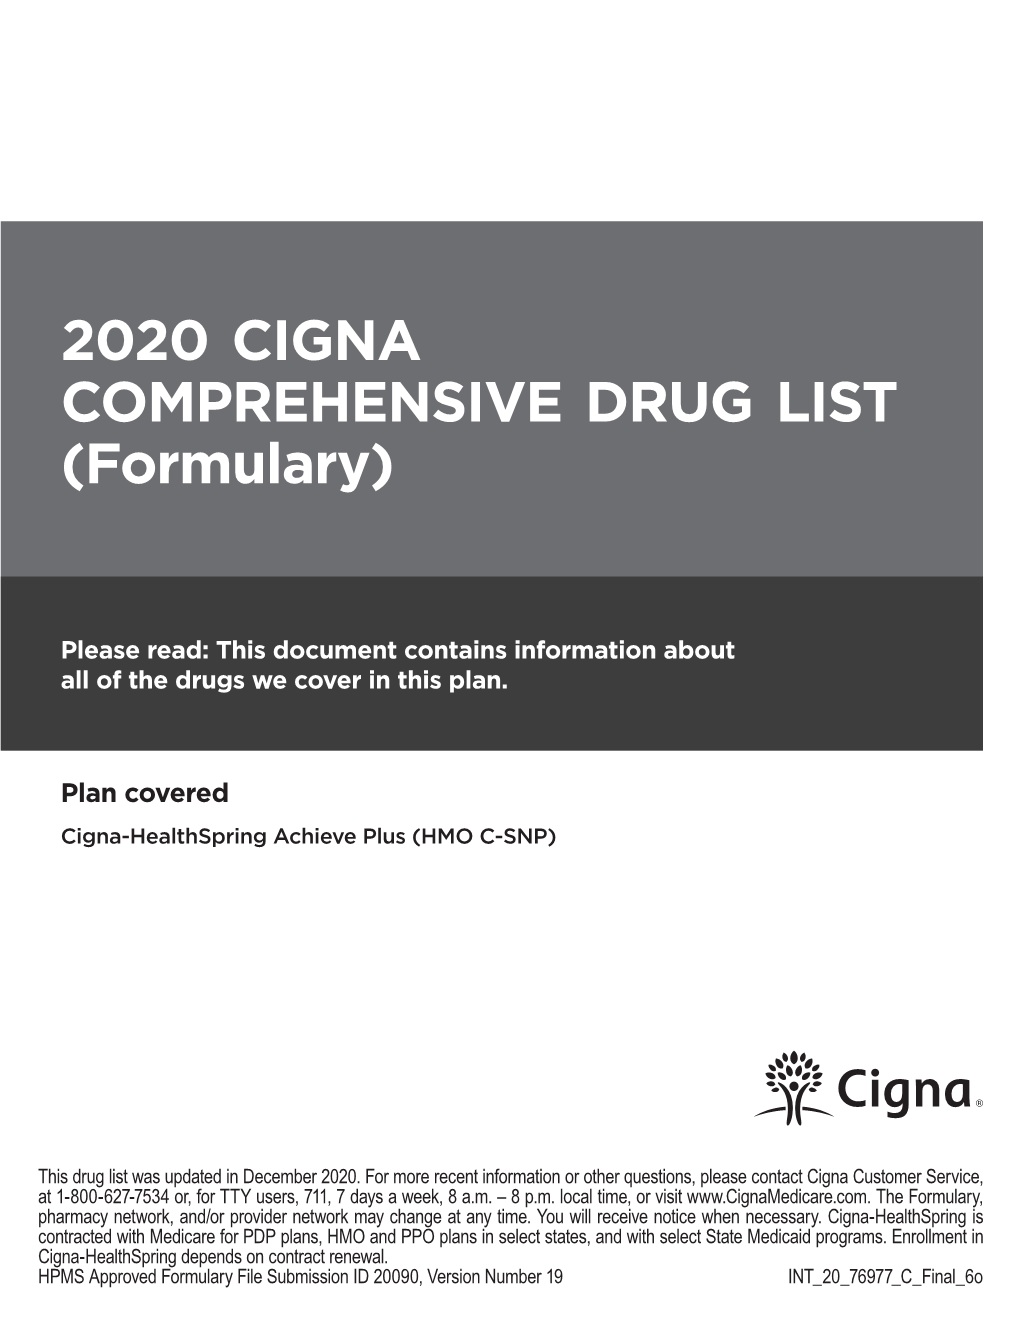 2020 CIGNA COMPREHENSIVE DRUG LIST (Formulary)